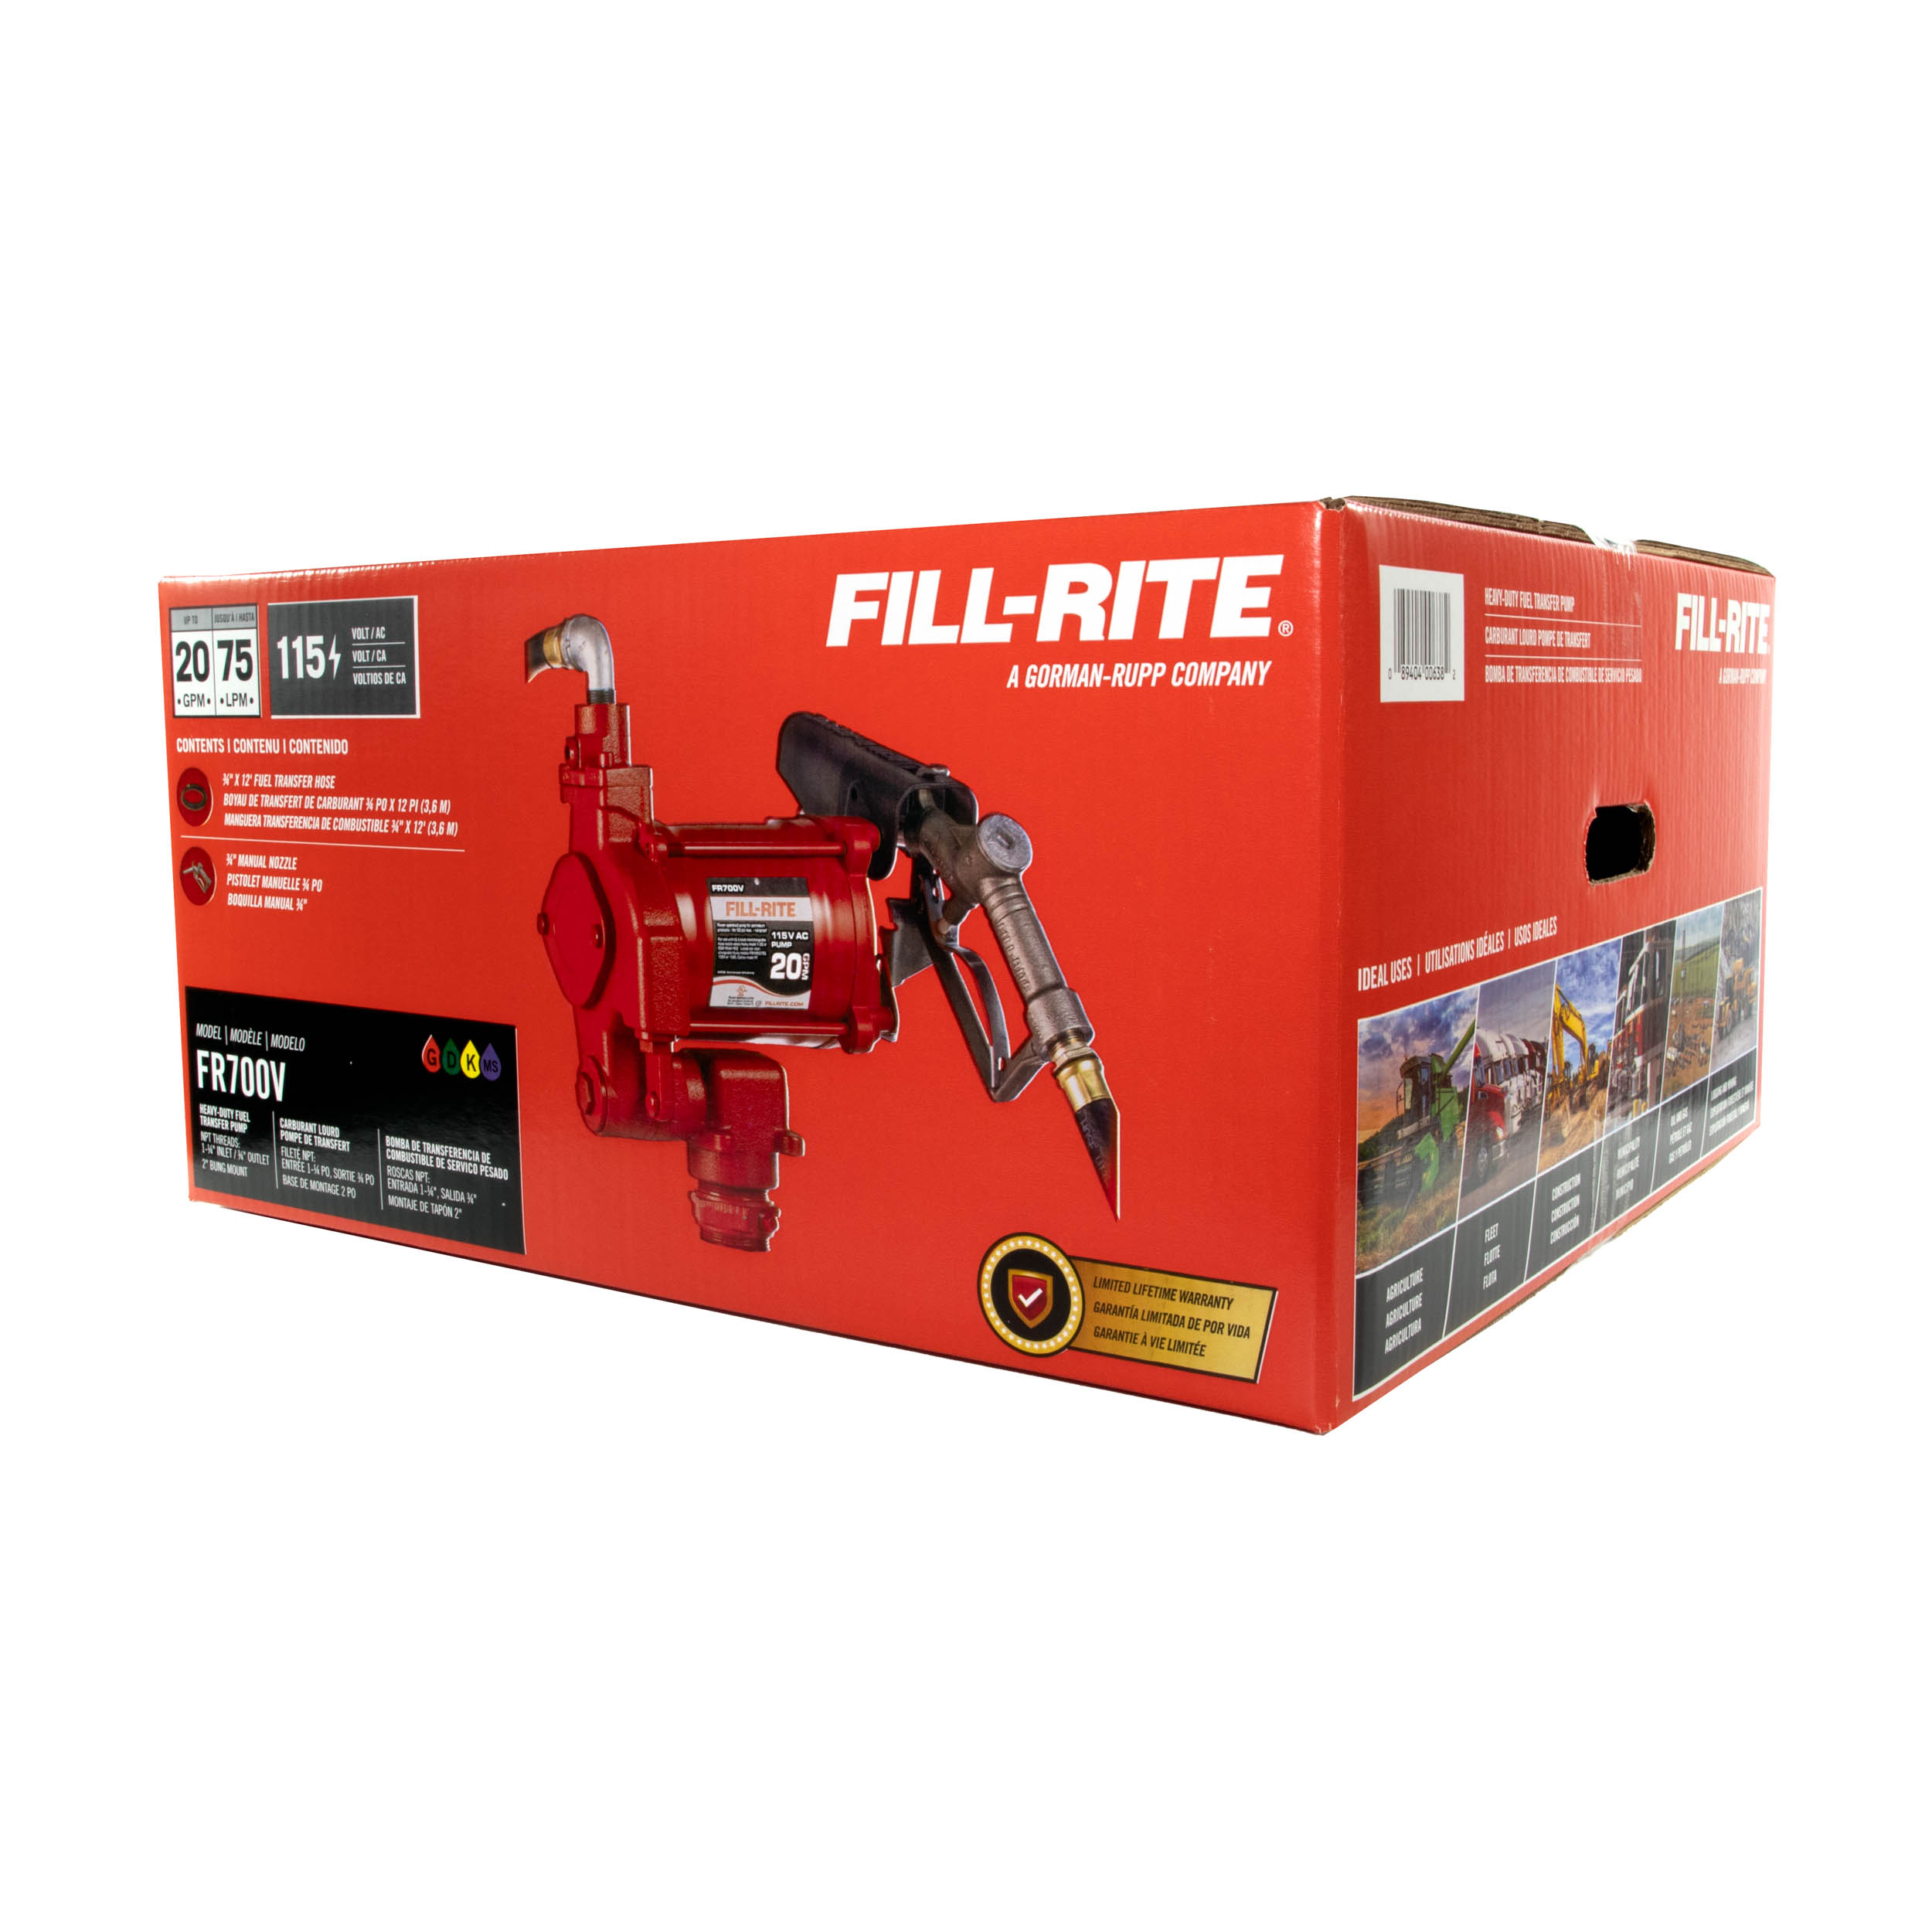 Fill-Rite-FR700V-115V-fuel-transfer-pump-in-packaging